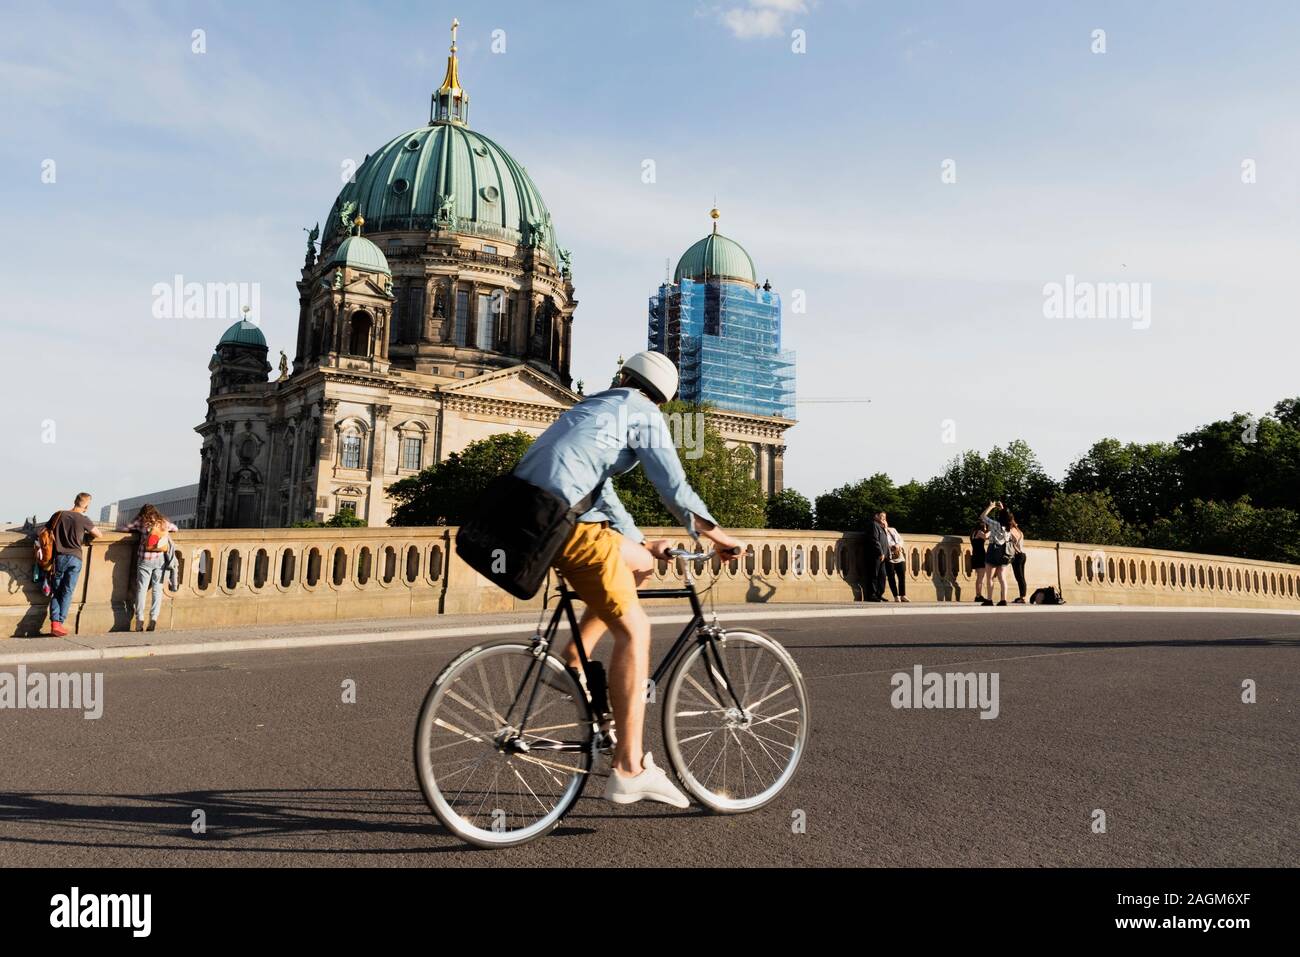 BERLIN, ALLEMAGNE - le 24 mai 2018 : des cyclistes et d'autres personnes à l'Friedrichsbrucke, pont sur la rivière Spree, avec le Berliner Dom, la cathédrale de Banque D'Images